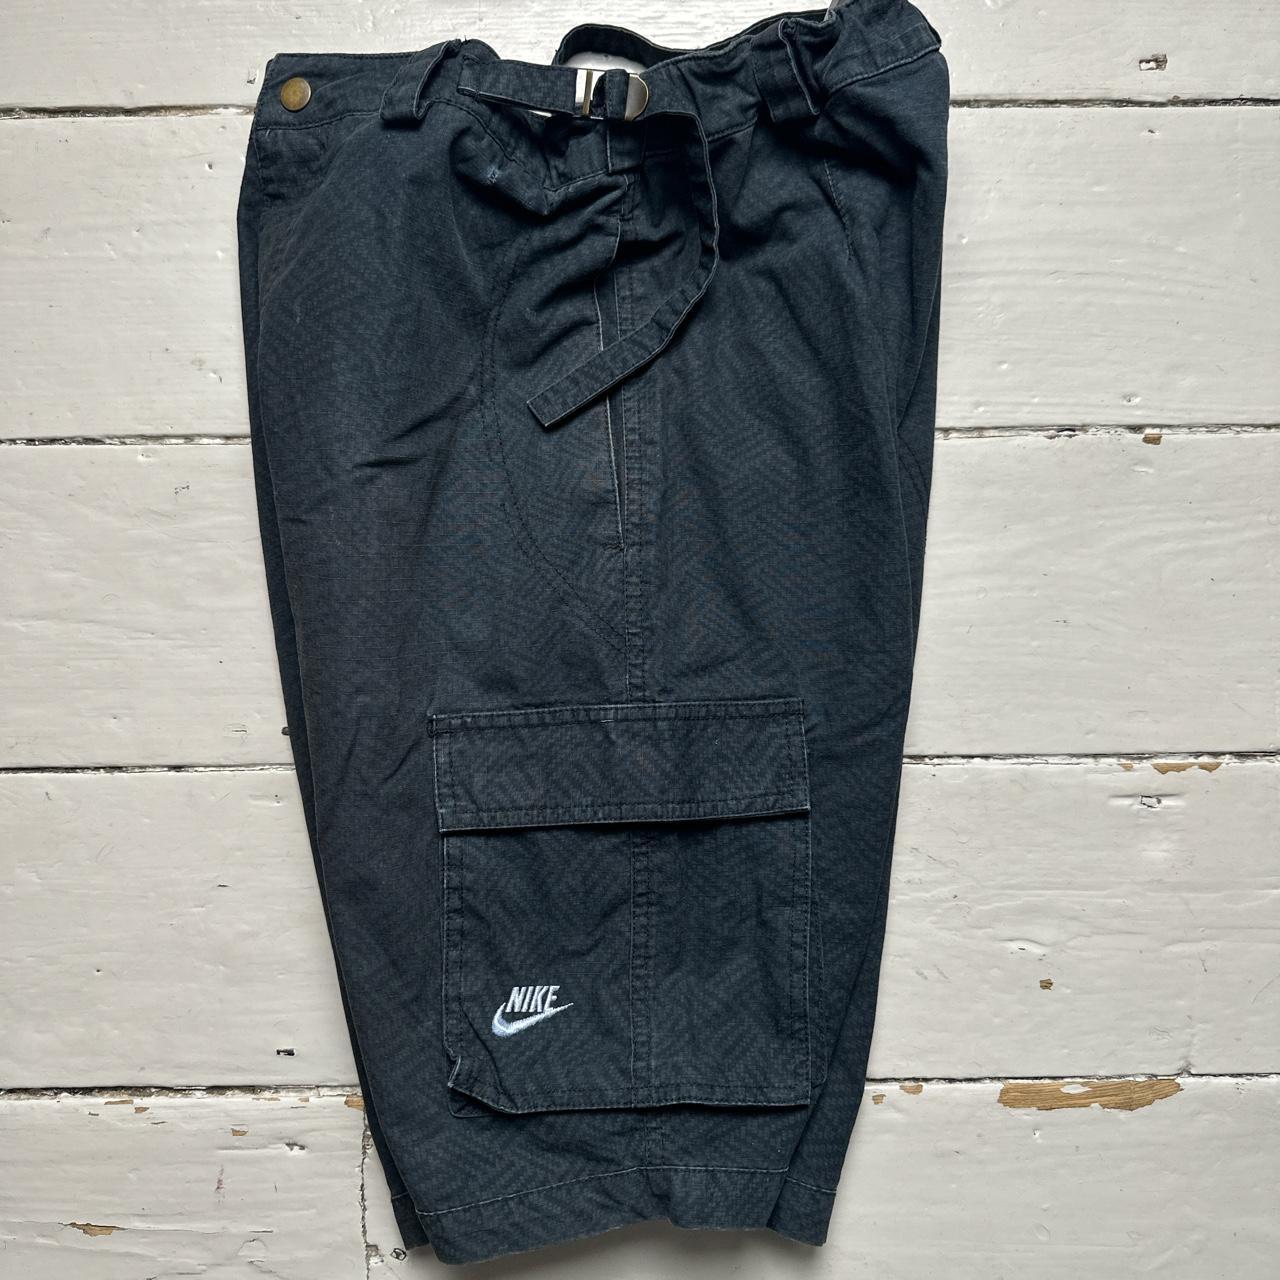 Nike Cargo Combat Shorts Black and White